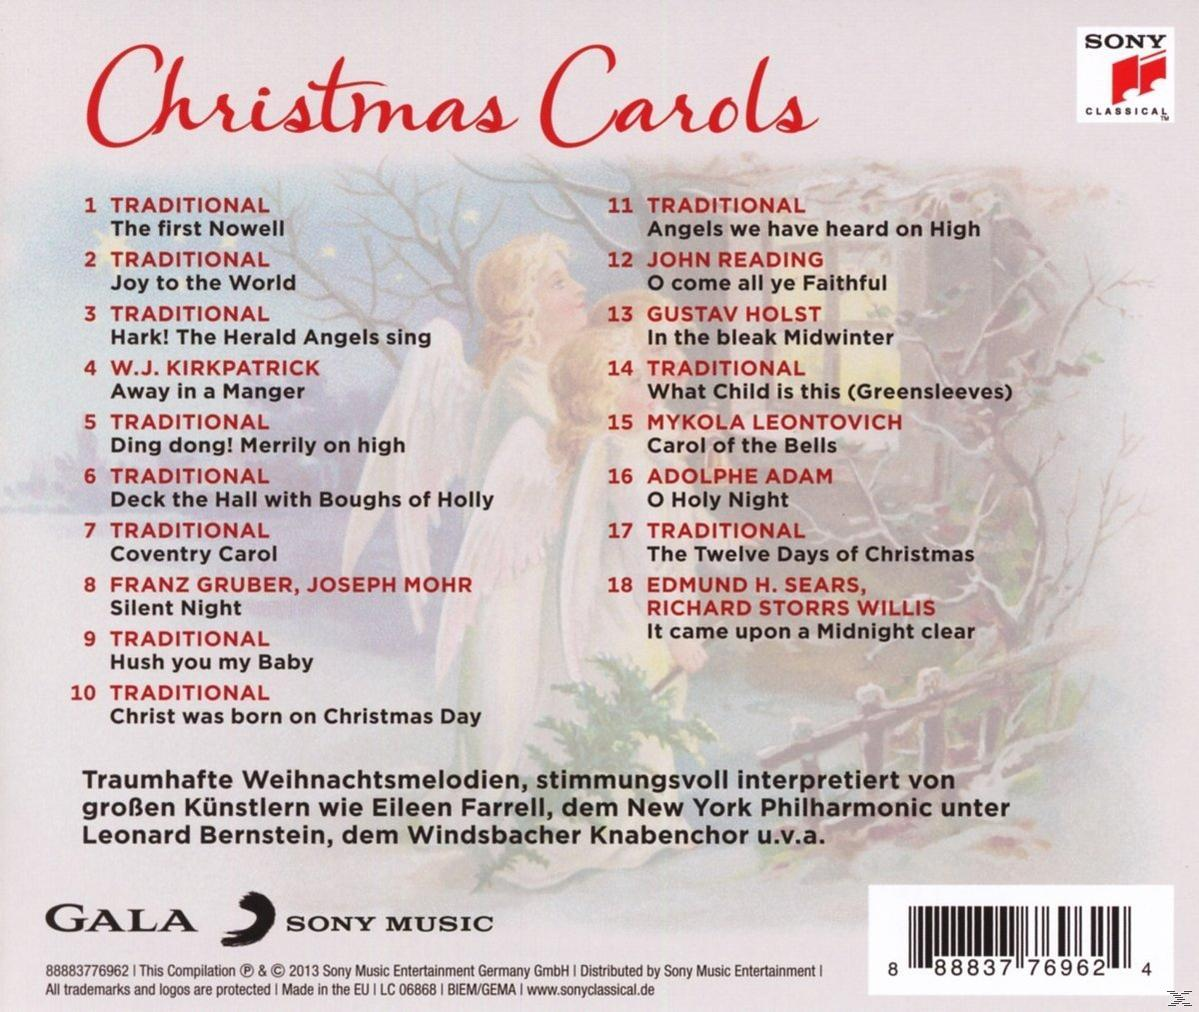 VARIOUS - Christmas Carols-Die Schönsten (CD) - Zur Weihnachten Melodien